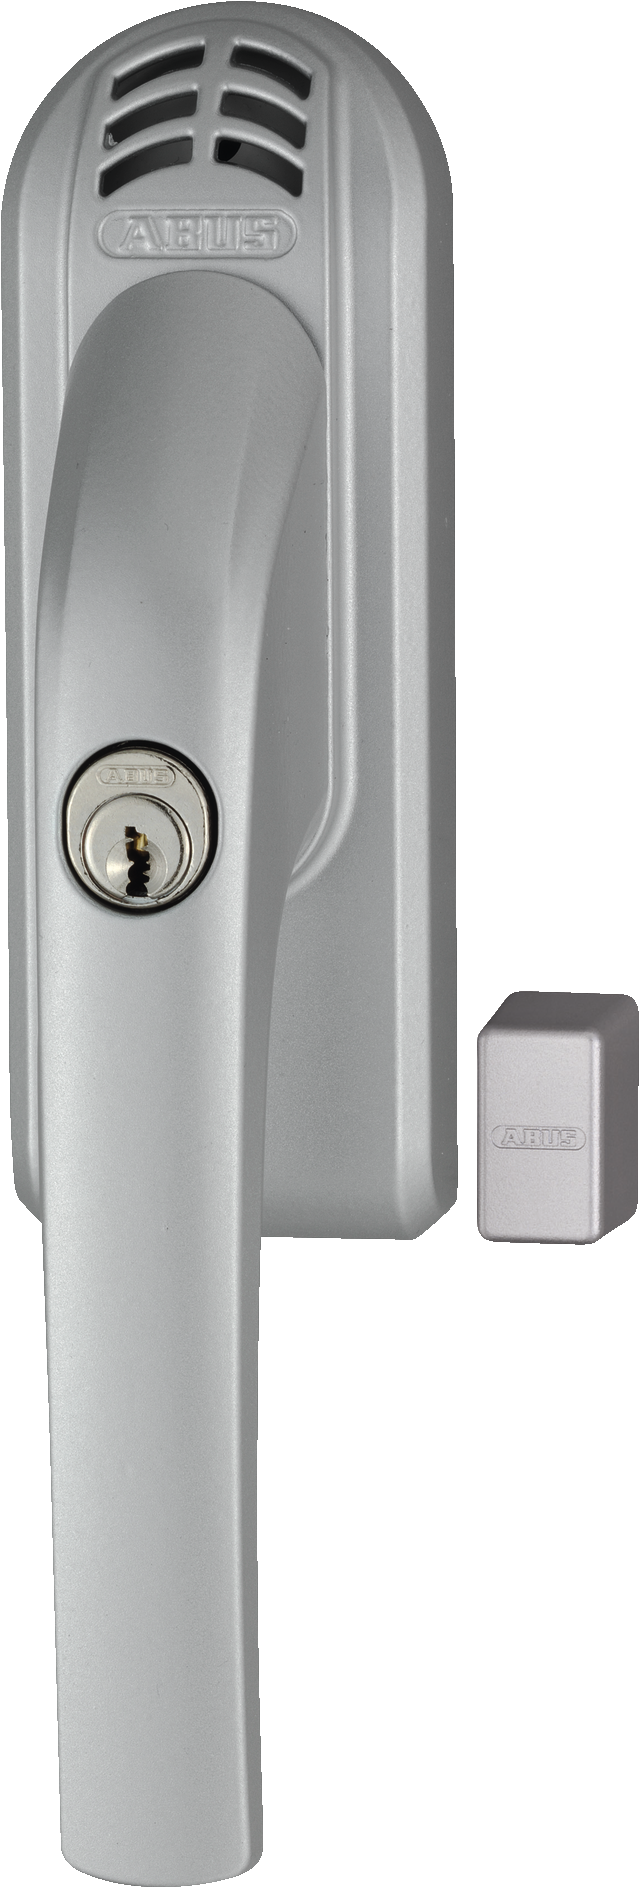 Klamka okienna z kluczykiem i alarmem FG300A S AAL0006